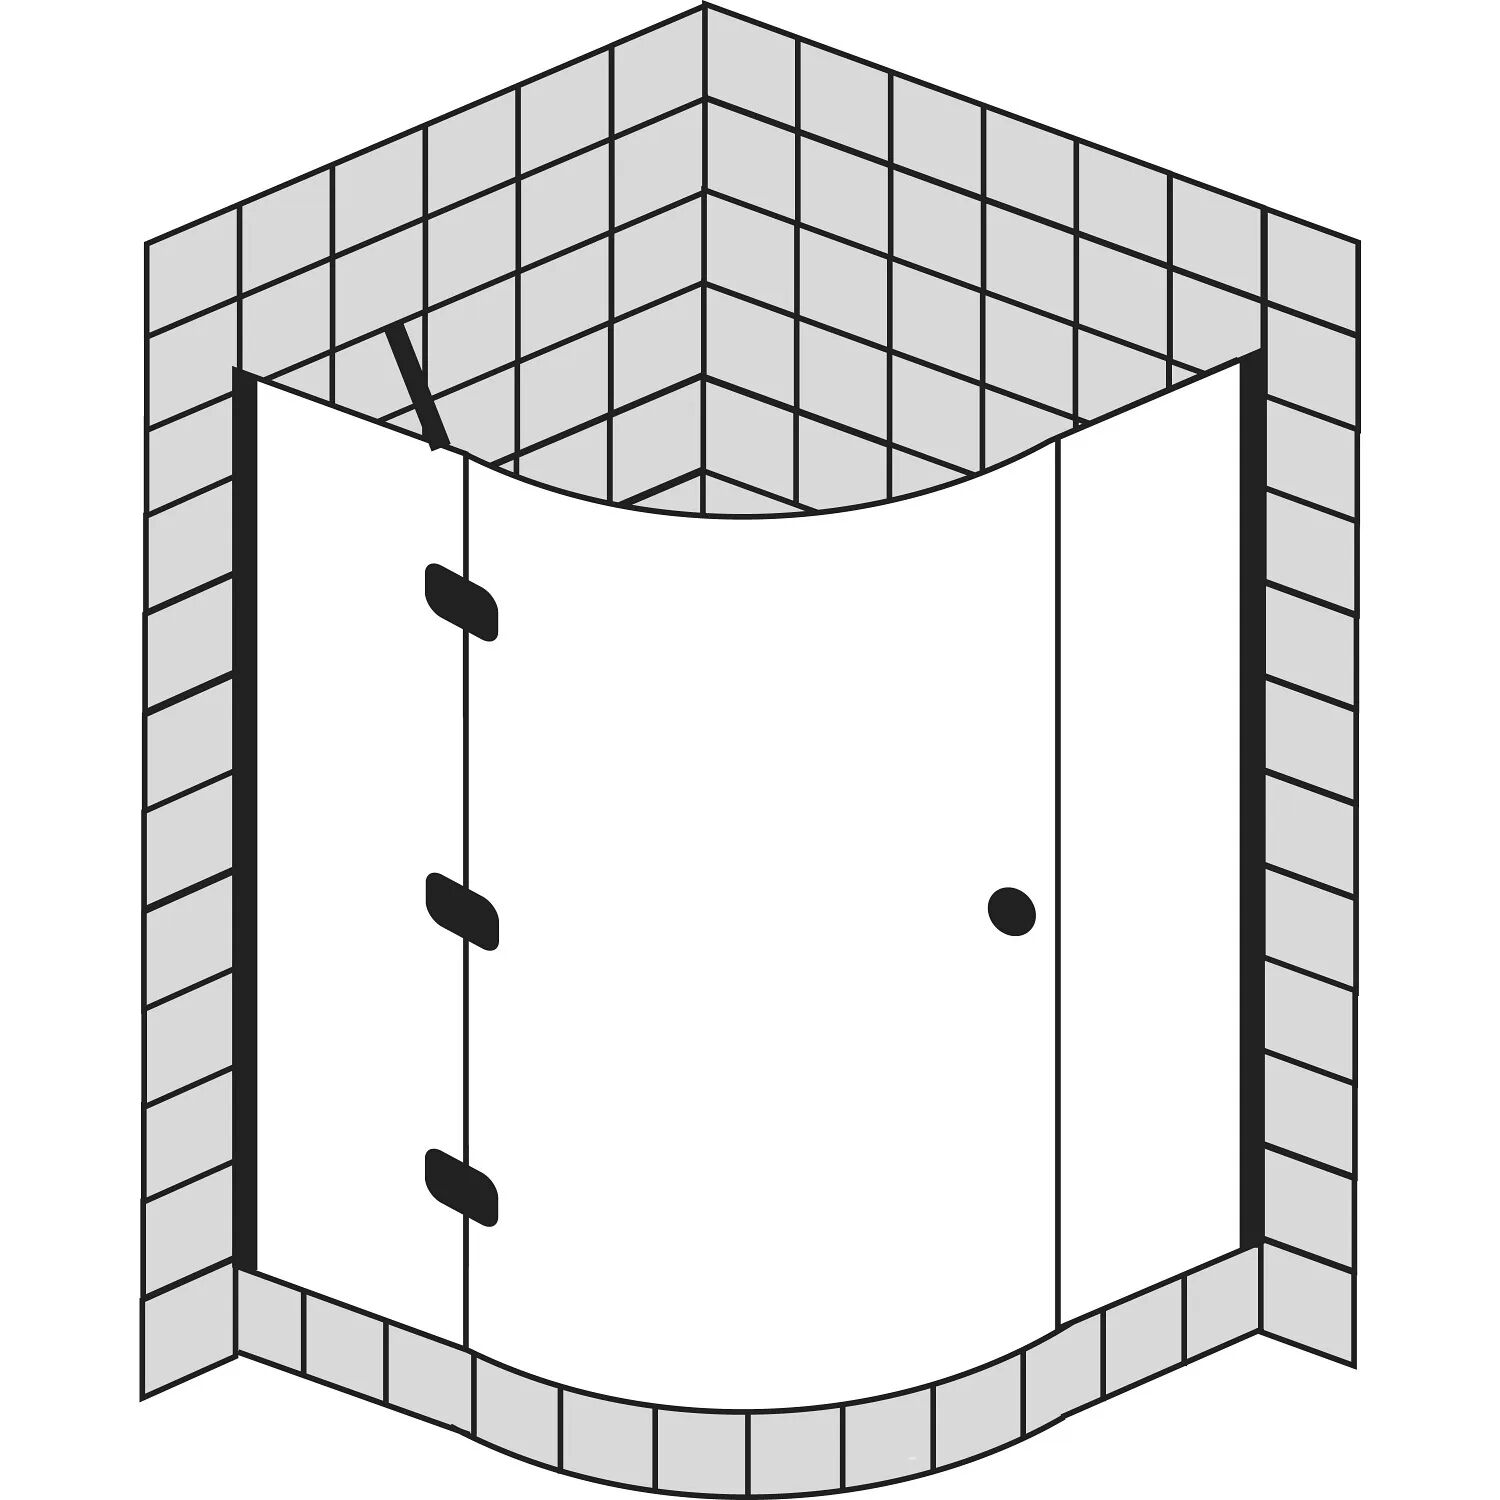 Sprinz BS-Dusche Runddusche mit 1 Tür 100 x 100 x 200 cm, Radius 50 cm BS-Dusche B: 100 T: 100 H: 200 R: 50 cm chrom/ silber hochglanzpoliert